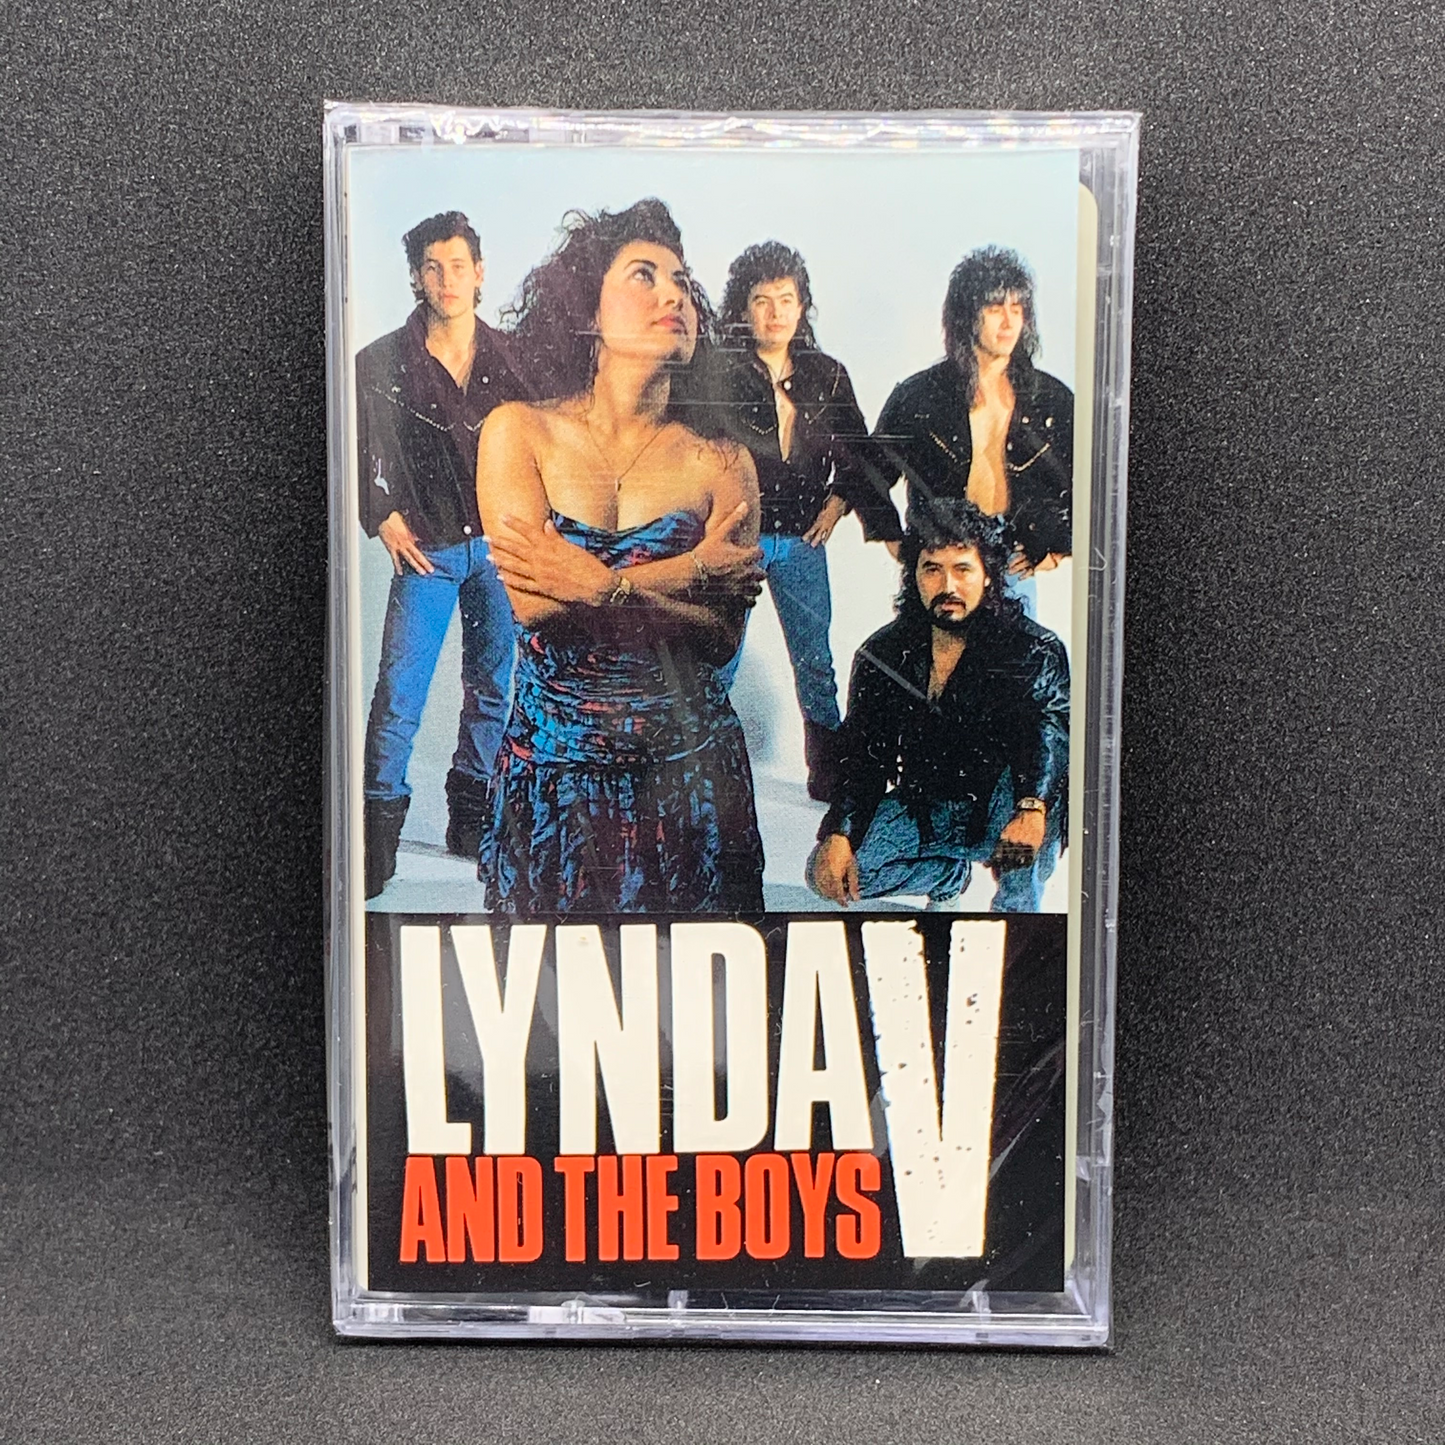 Lynda V And The Boys (Cassette)